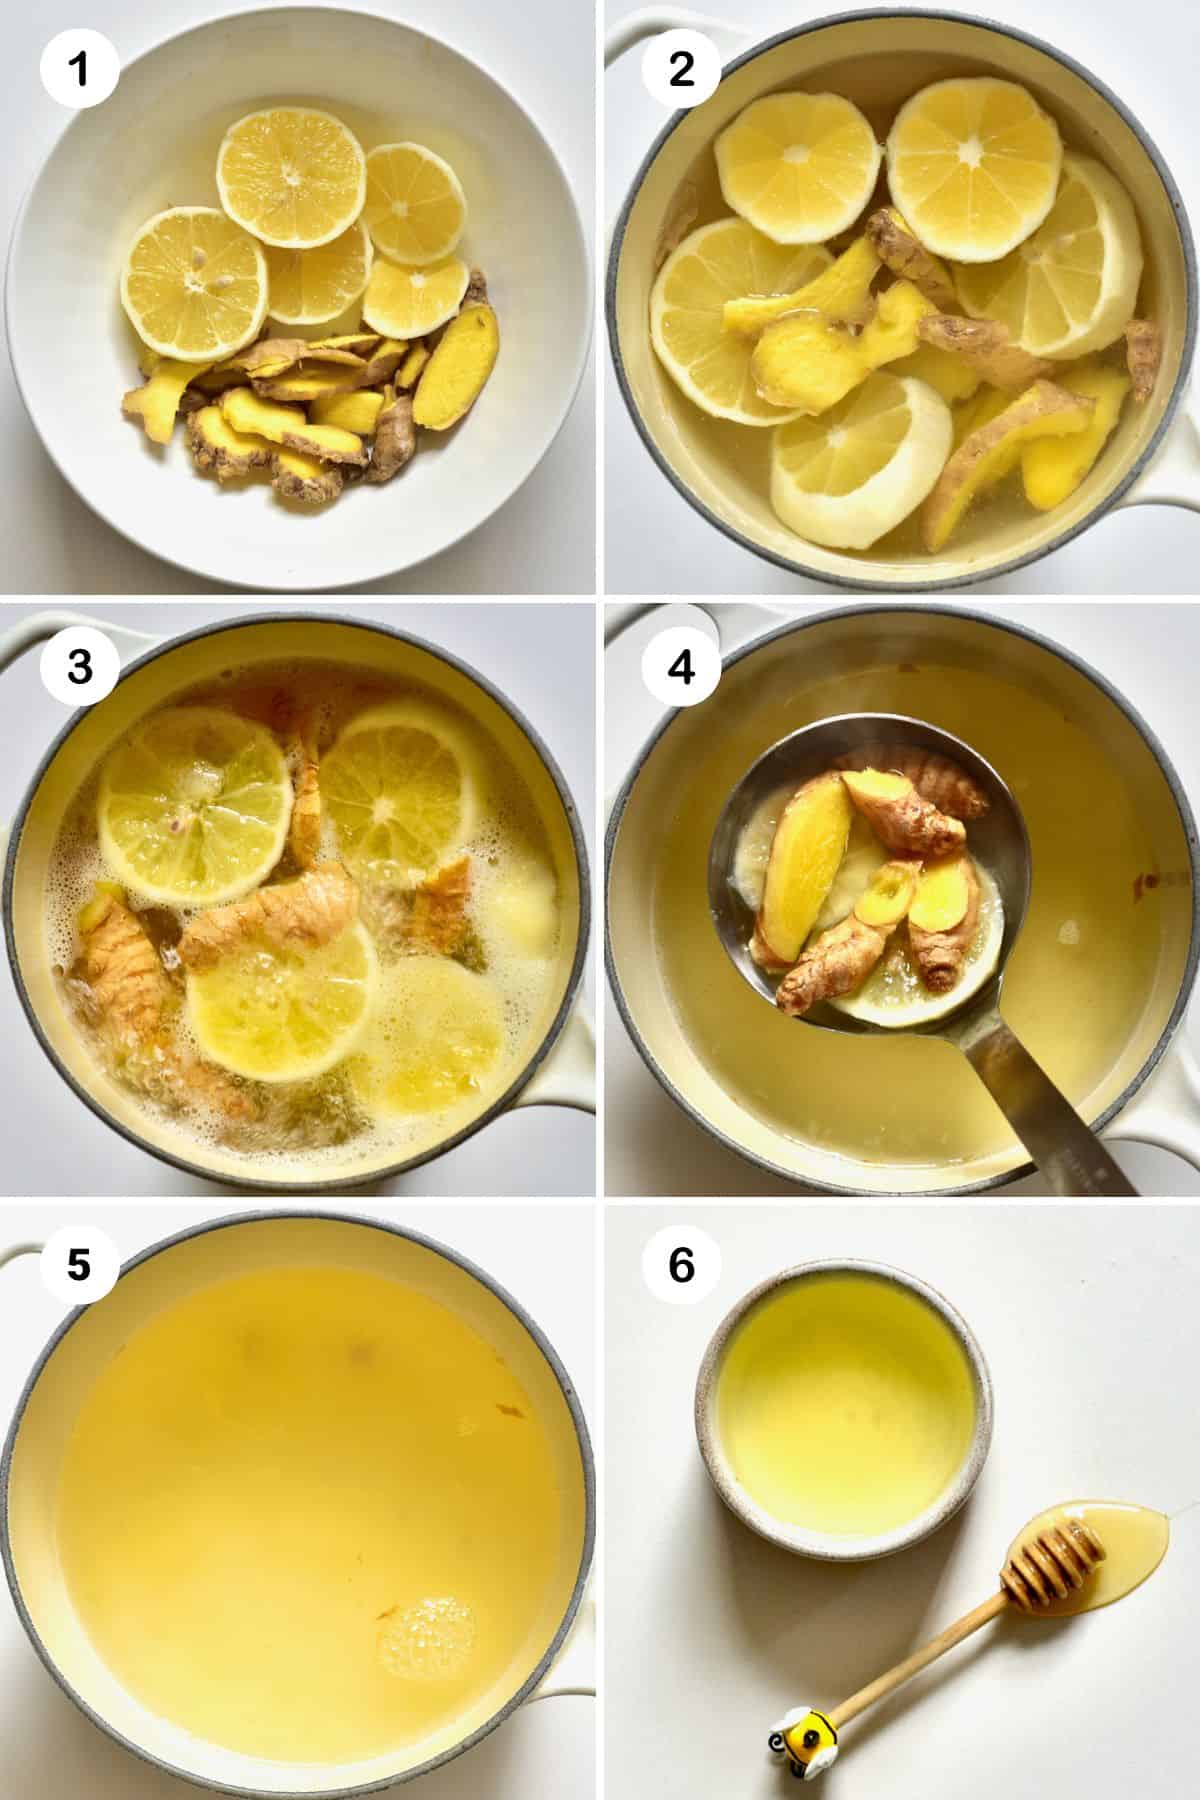 Steps for making ginger tea